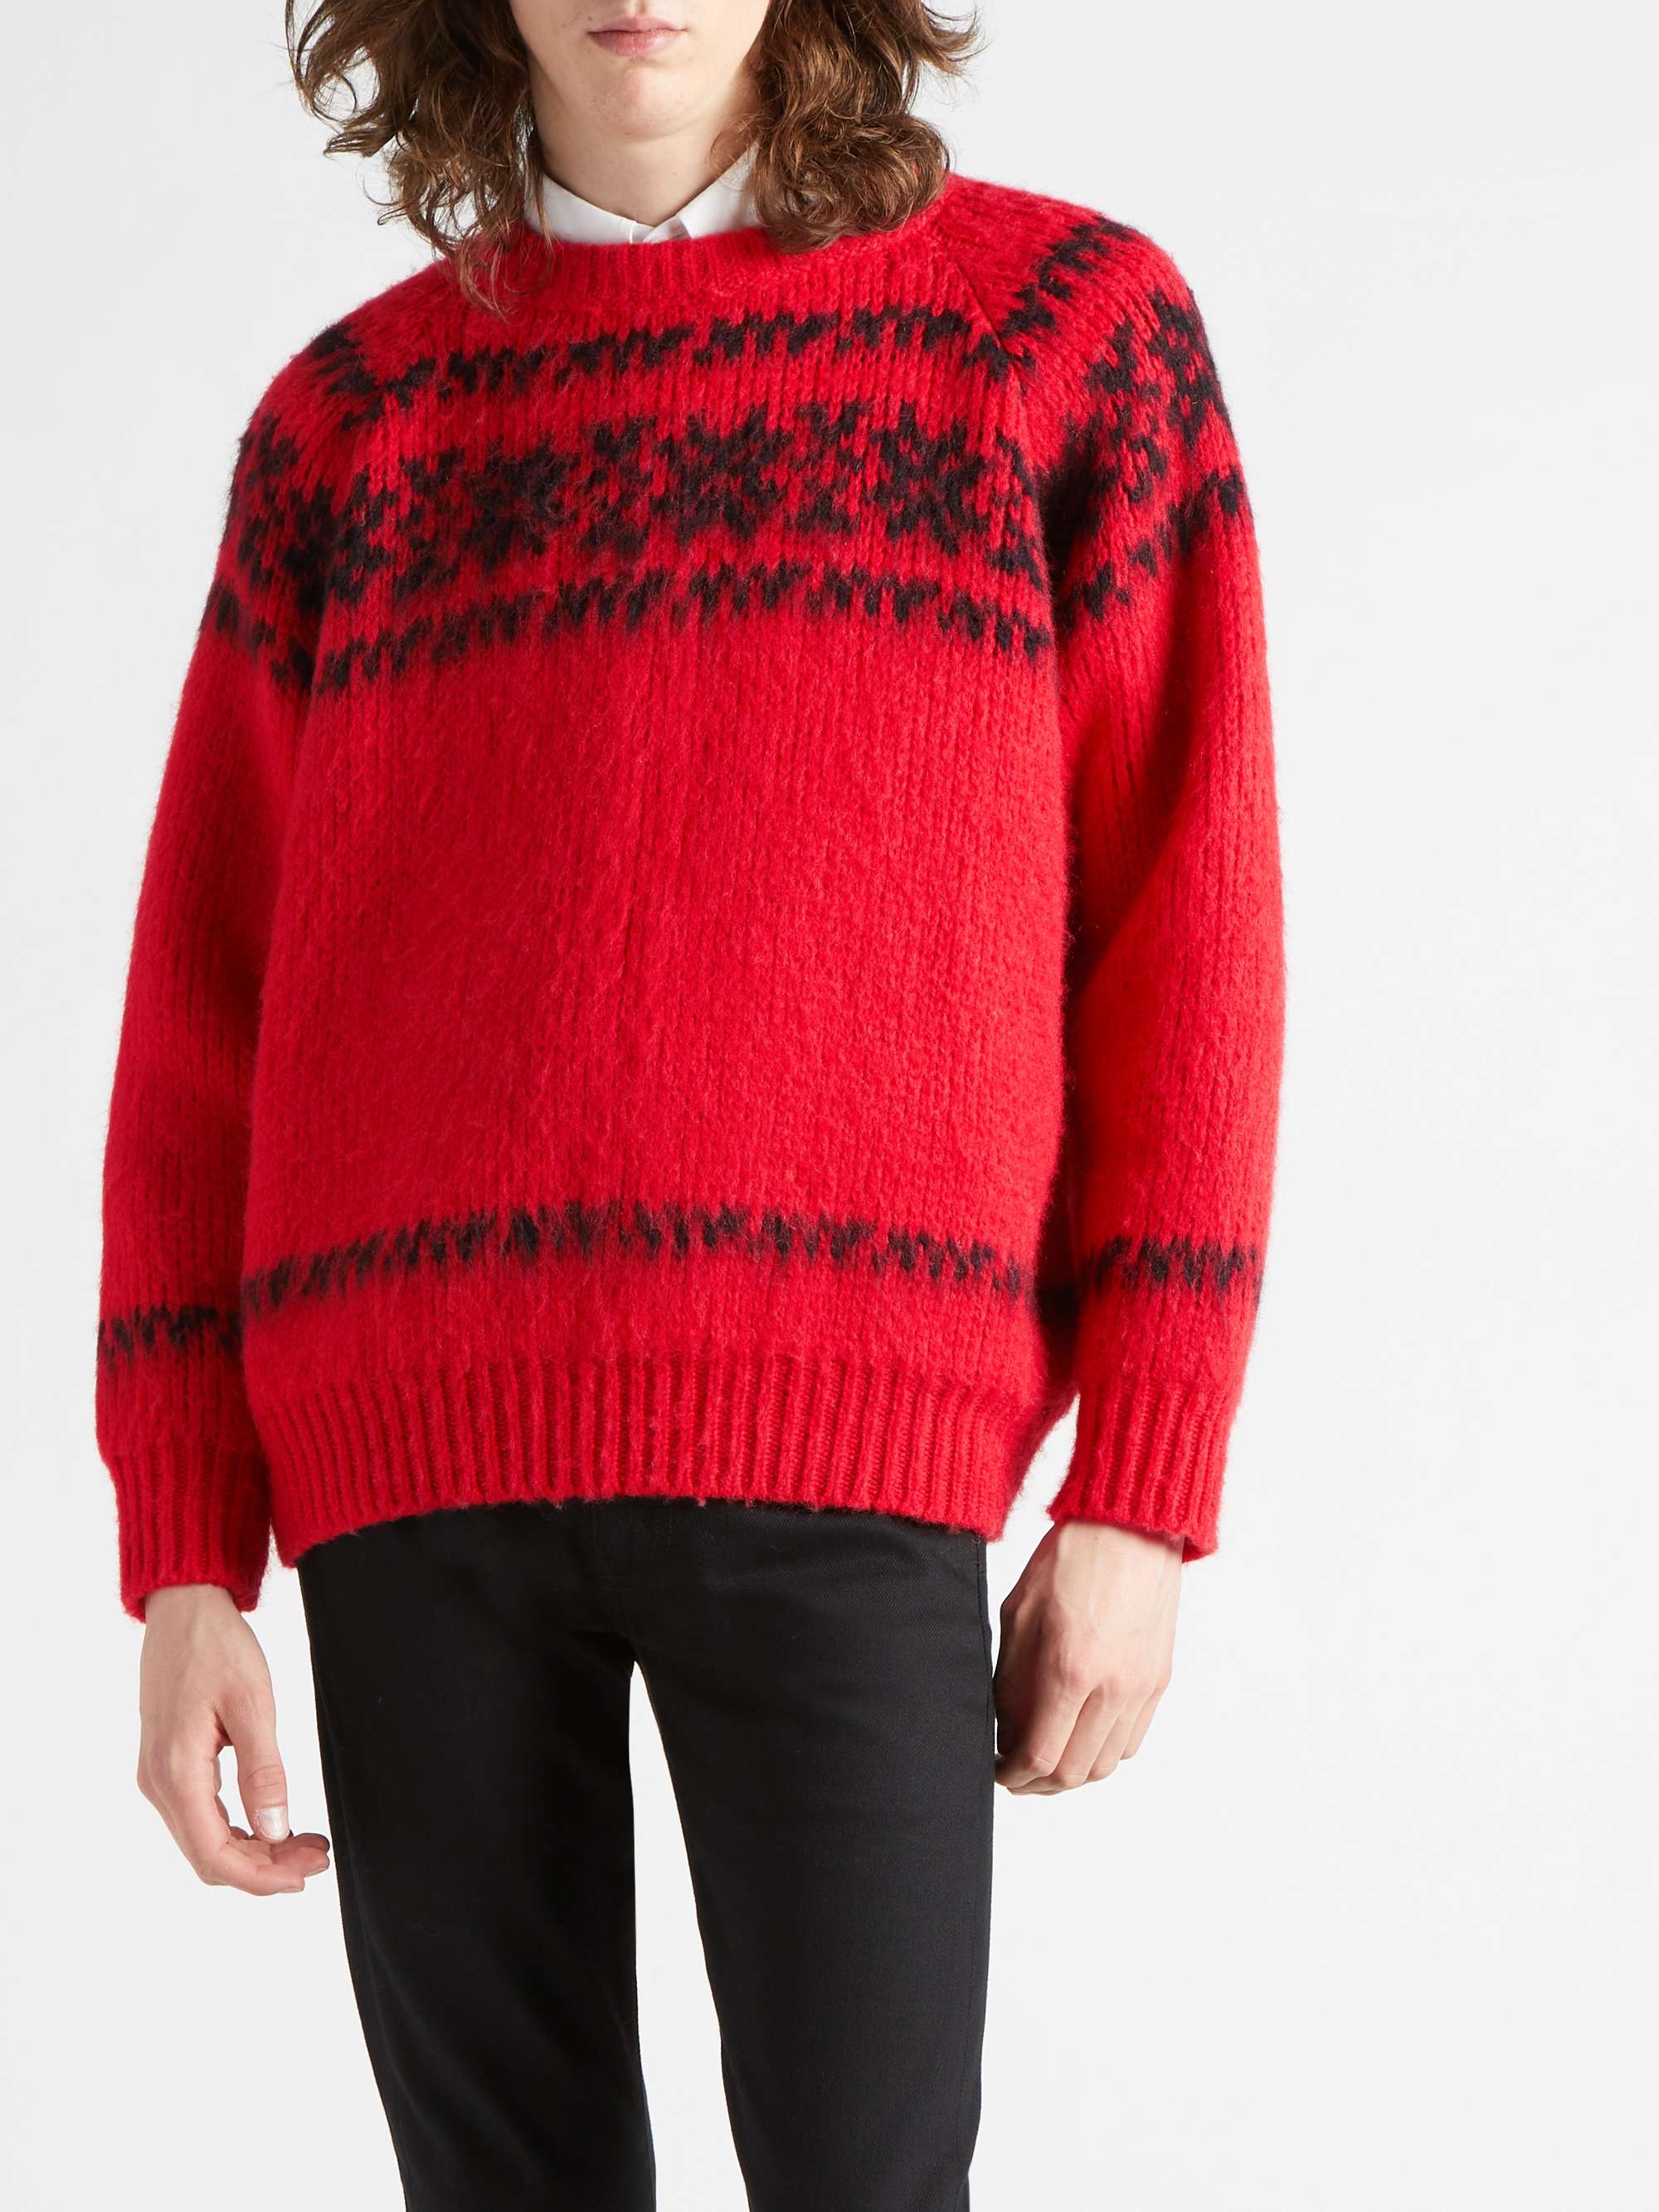 CELINE HOMME Fair Isle Wool-Jacquard Sweater